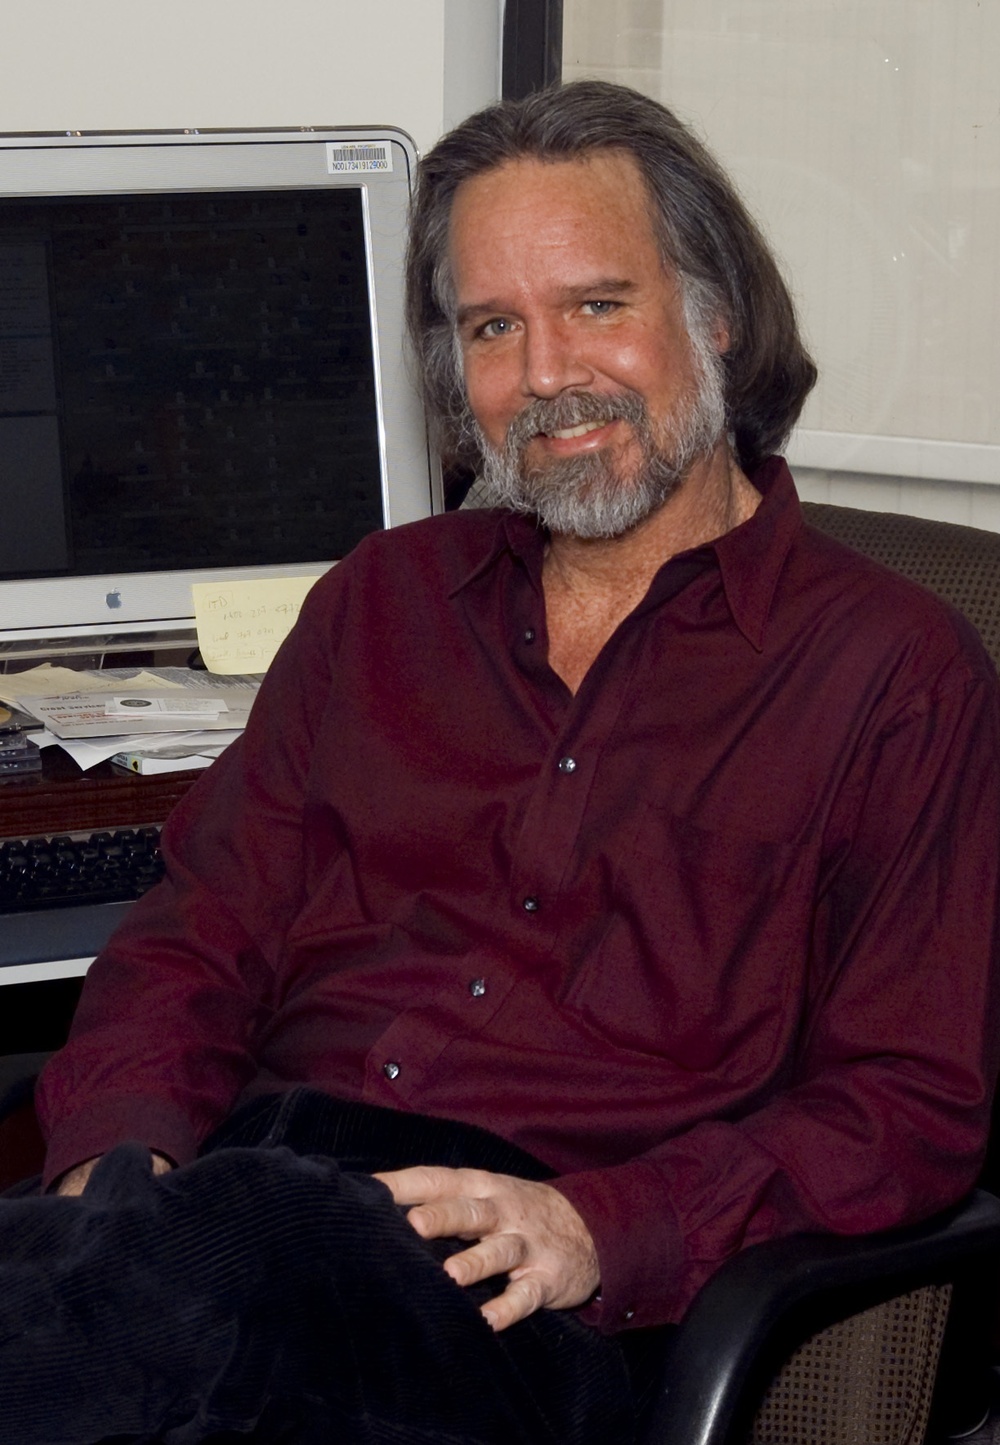 NRL Computer Security Pioneer Dr. John McLean Retires